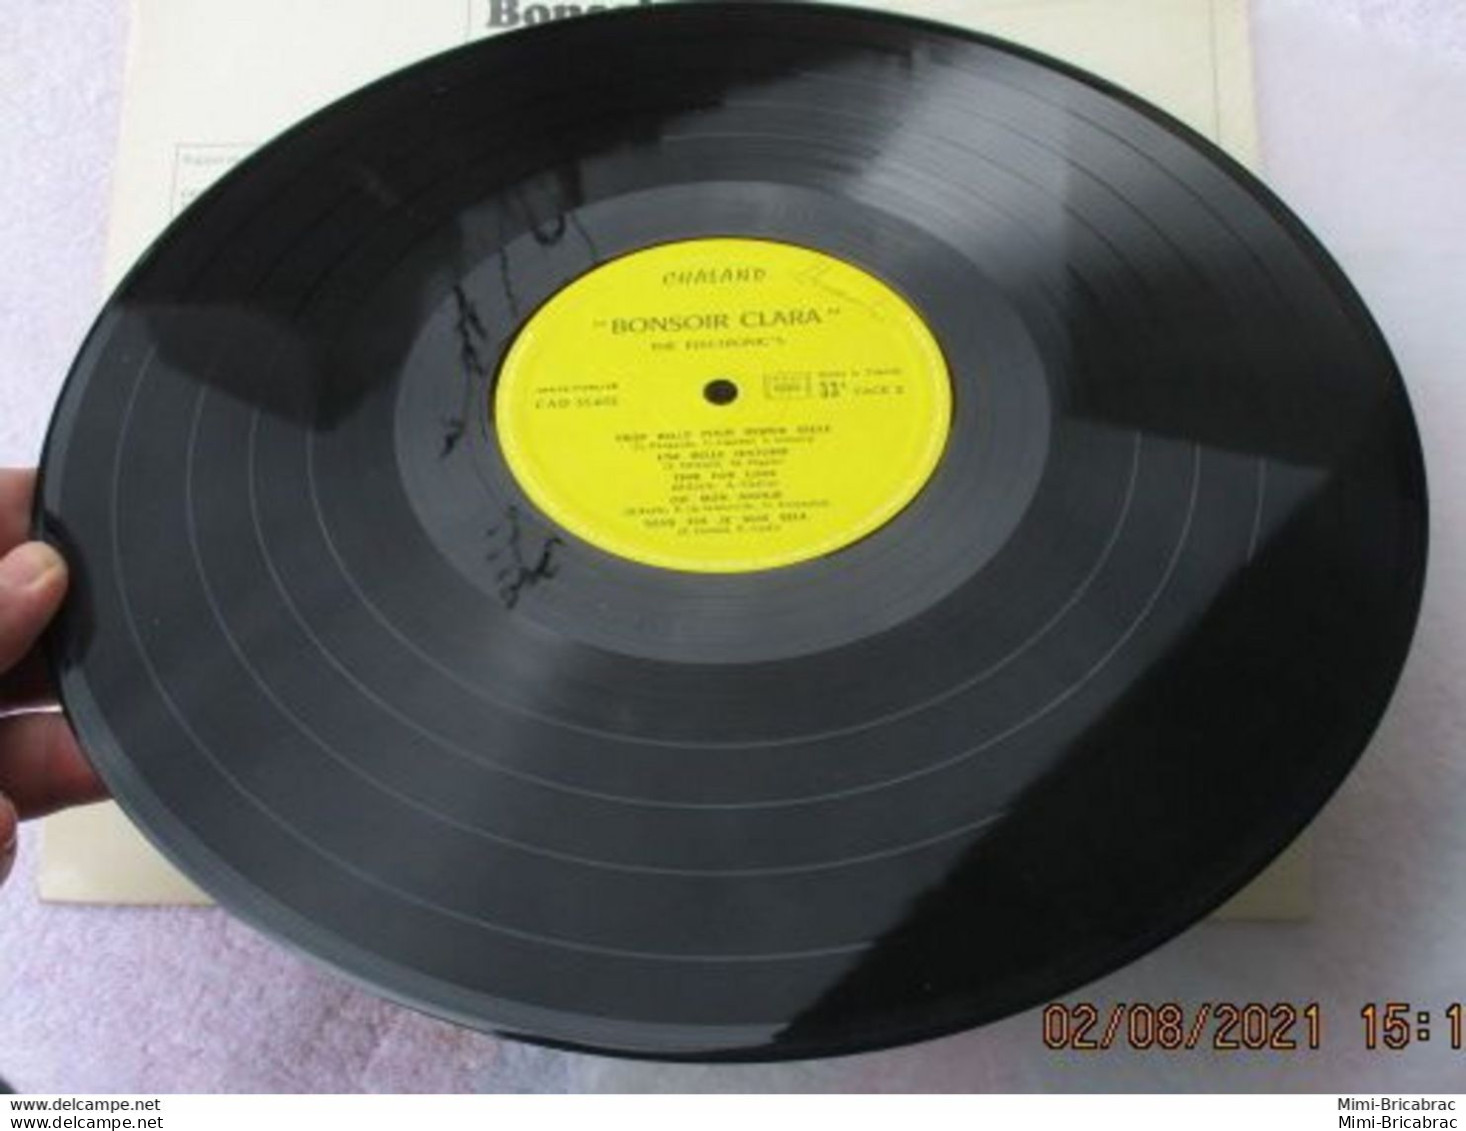 Suite Décés : Cote 7 Euros !!! 33T 30 Cm 33T The ELECTRONIC'S LP Vinyl BONSOIR CLARA -LA MUSICA -TRETEAUX 35012 - Compilaties